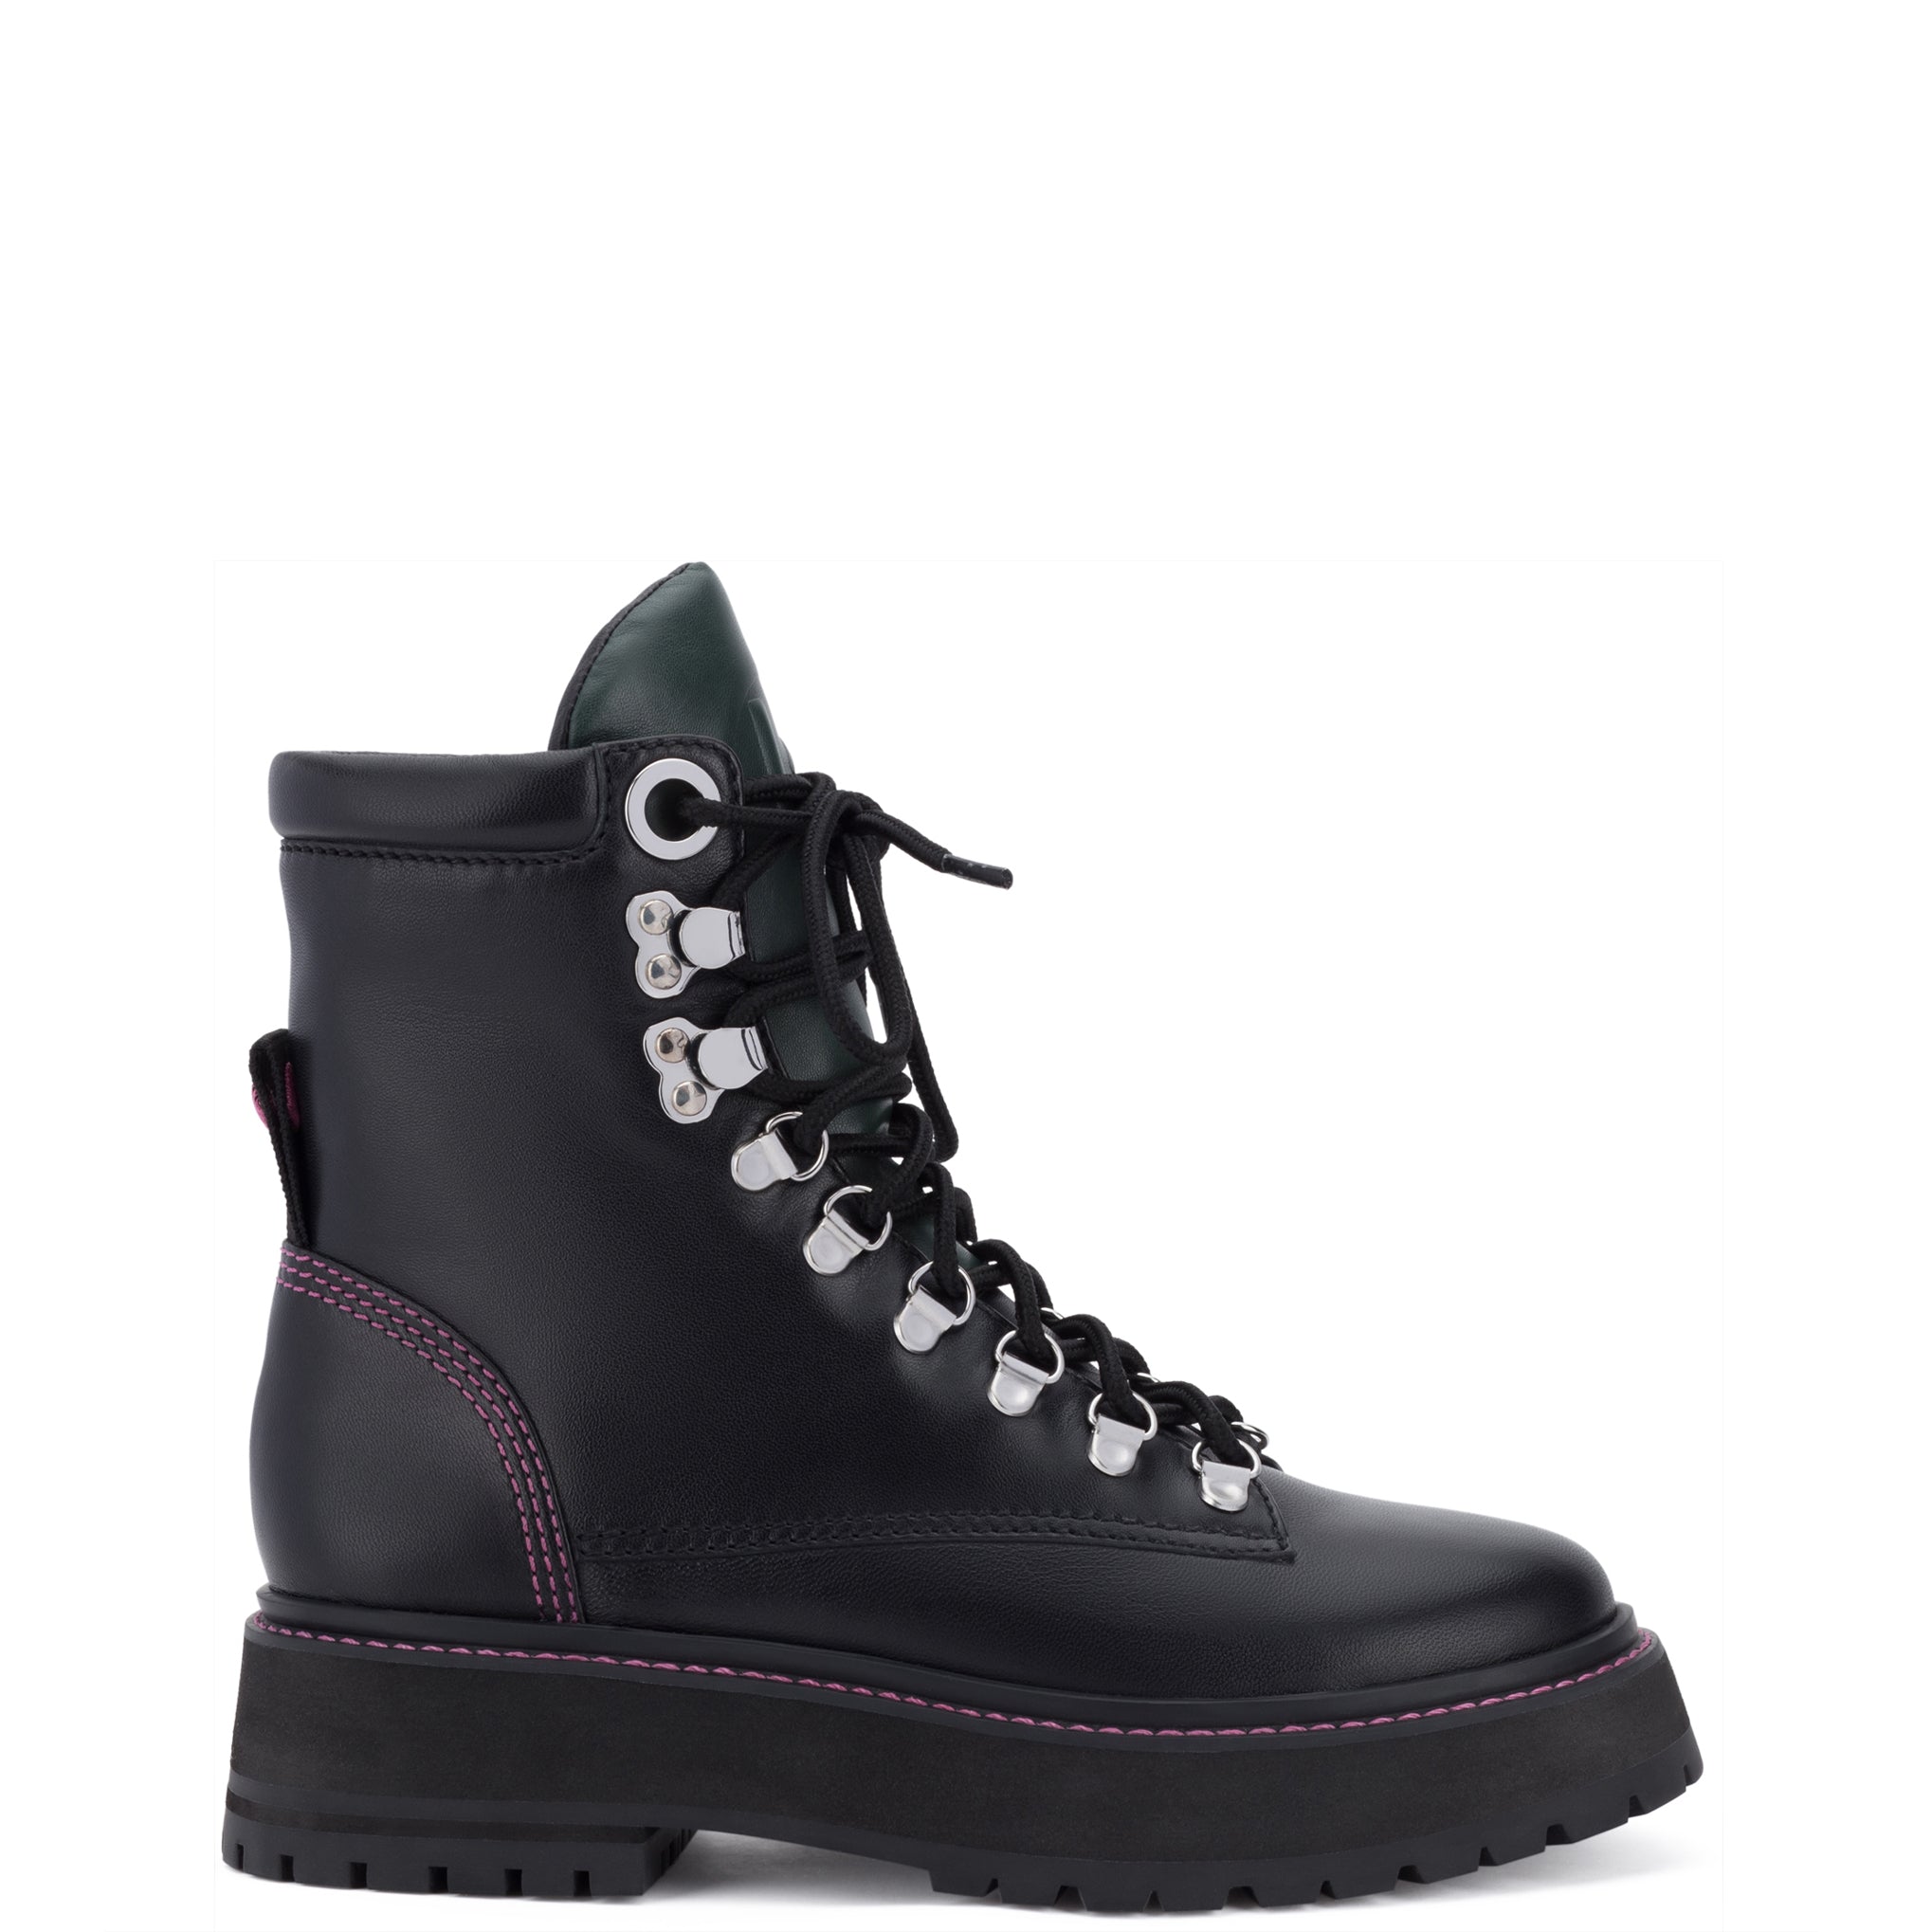 Jordan Boot In Black Leather - Larroude